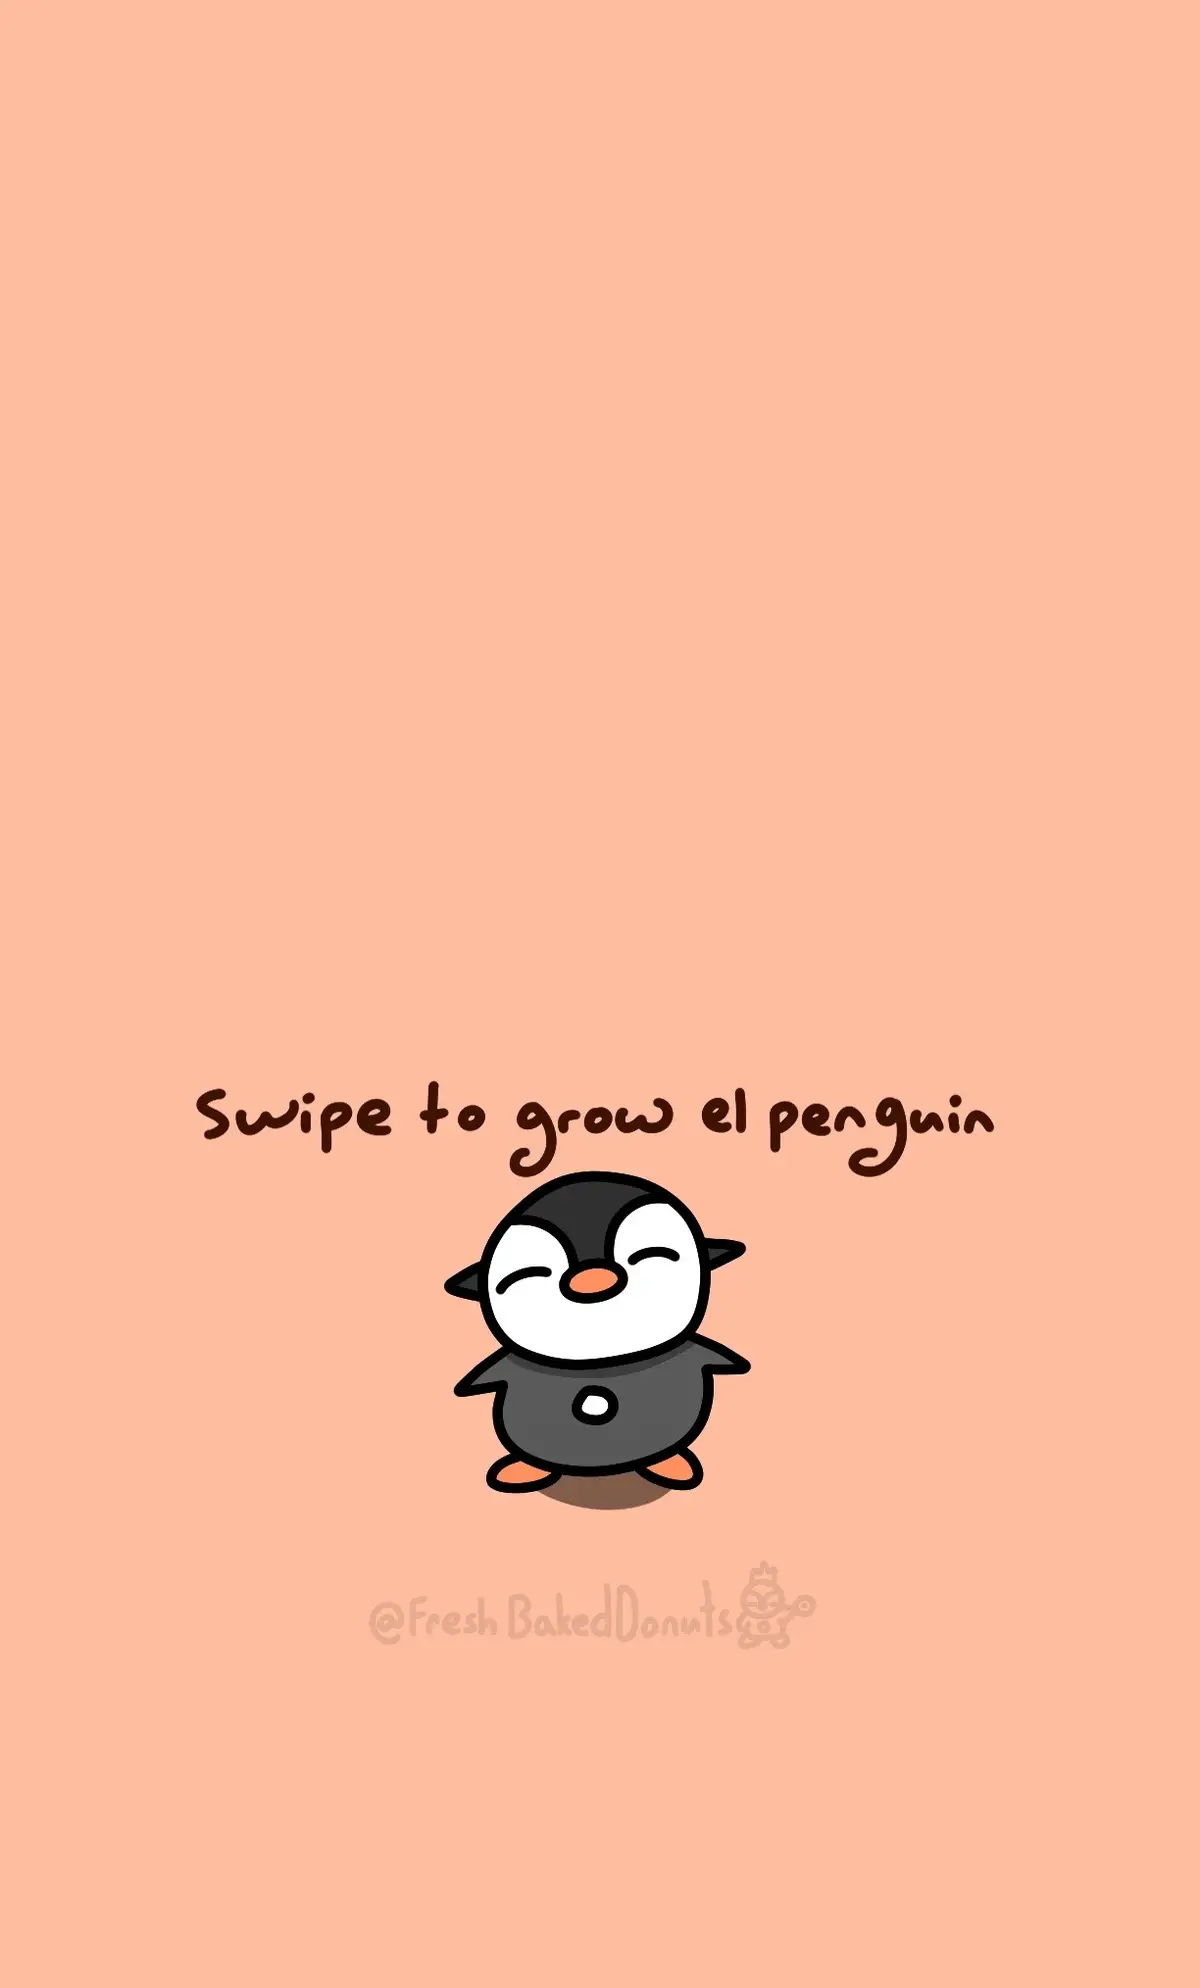 PENGUIN #fyp #fypシ #milkandmochabear #penguin #funny #slideshow #swipe 